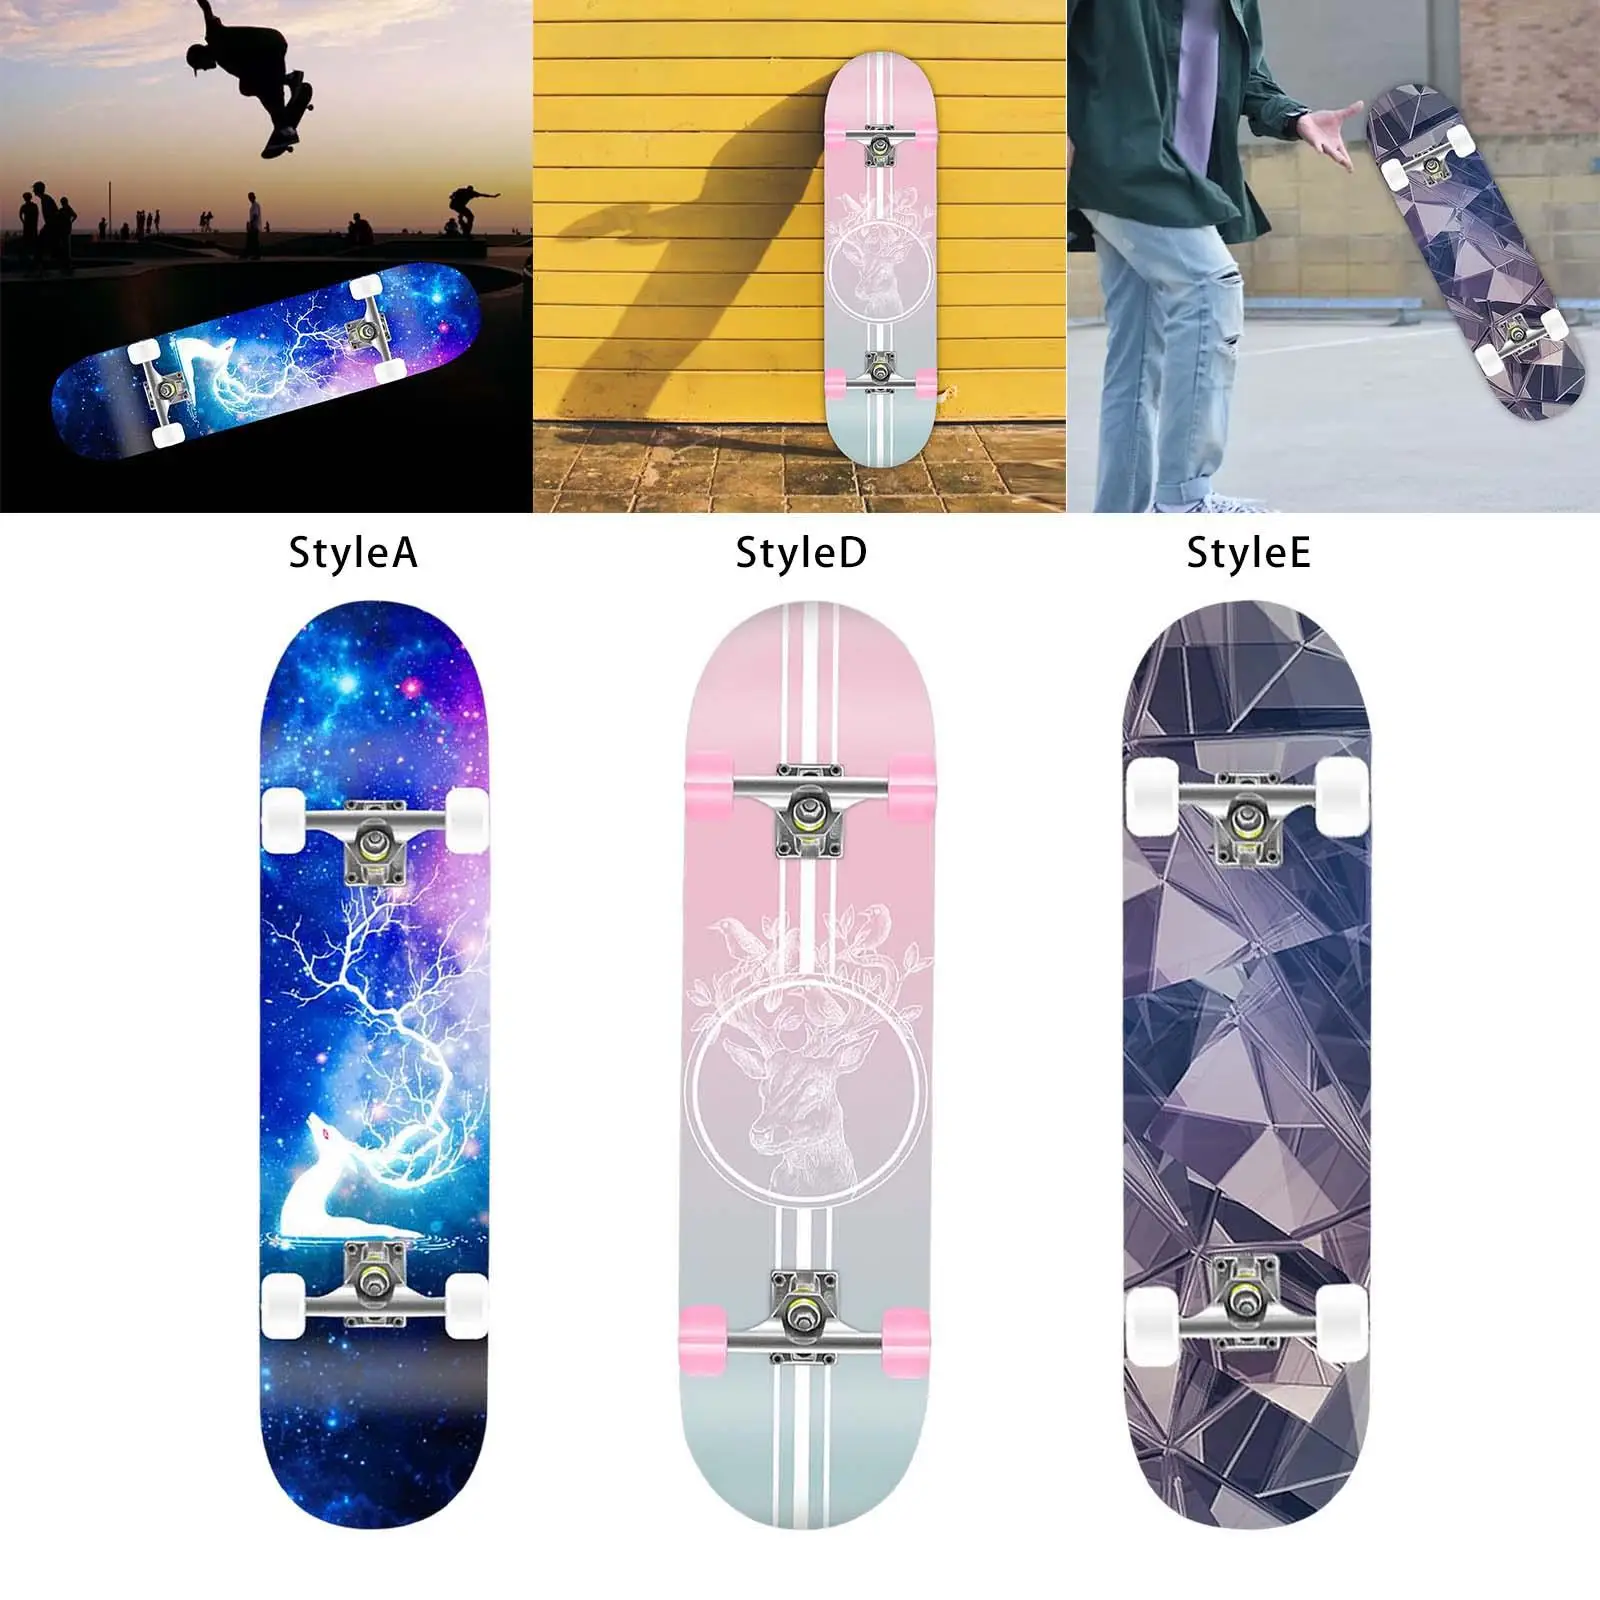 Unisex Complete Skateboard Double Kick 31 inch Fully Bracket Mute Long Board Concave for Beginners Kids Women Man Boys